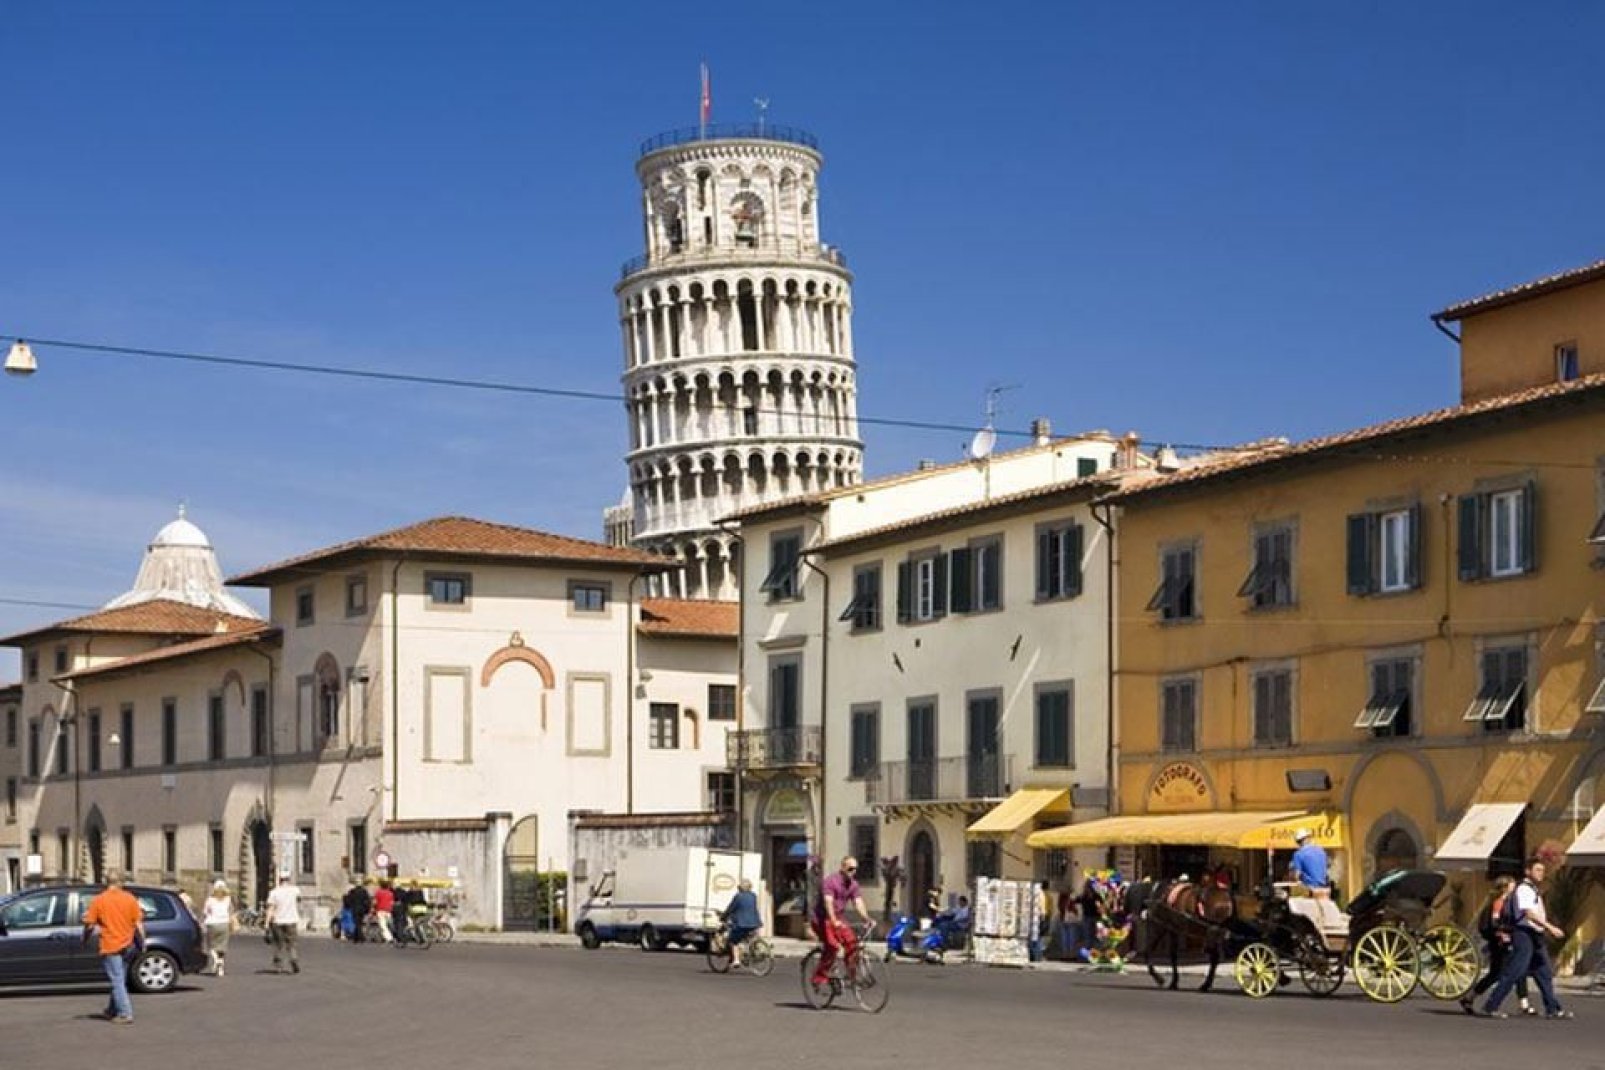 La parte más alta de la Torre sobresale de las casas que hay en el centro de Pisa.